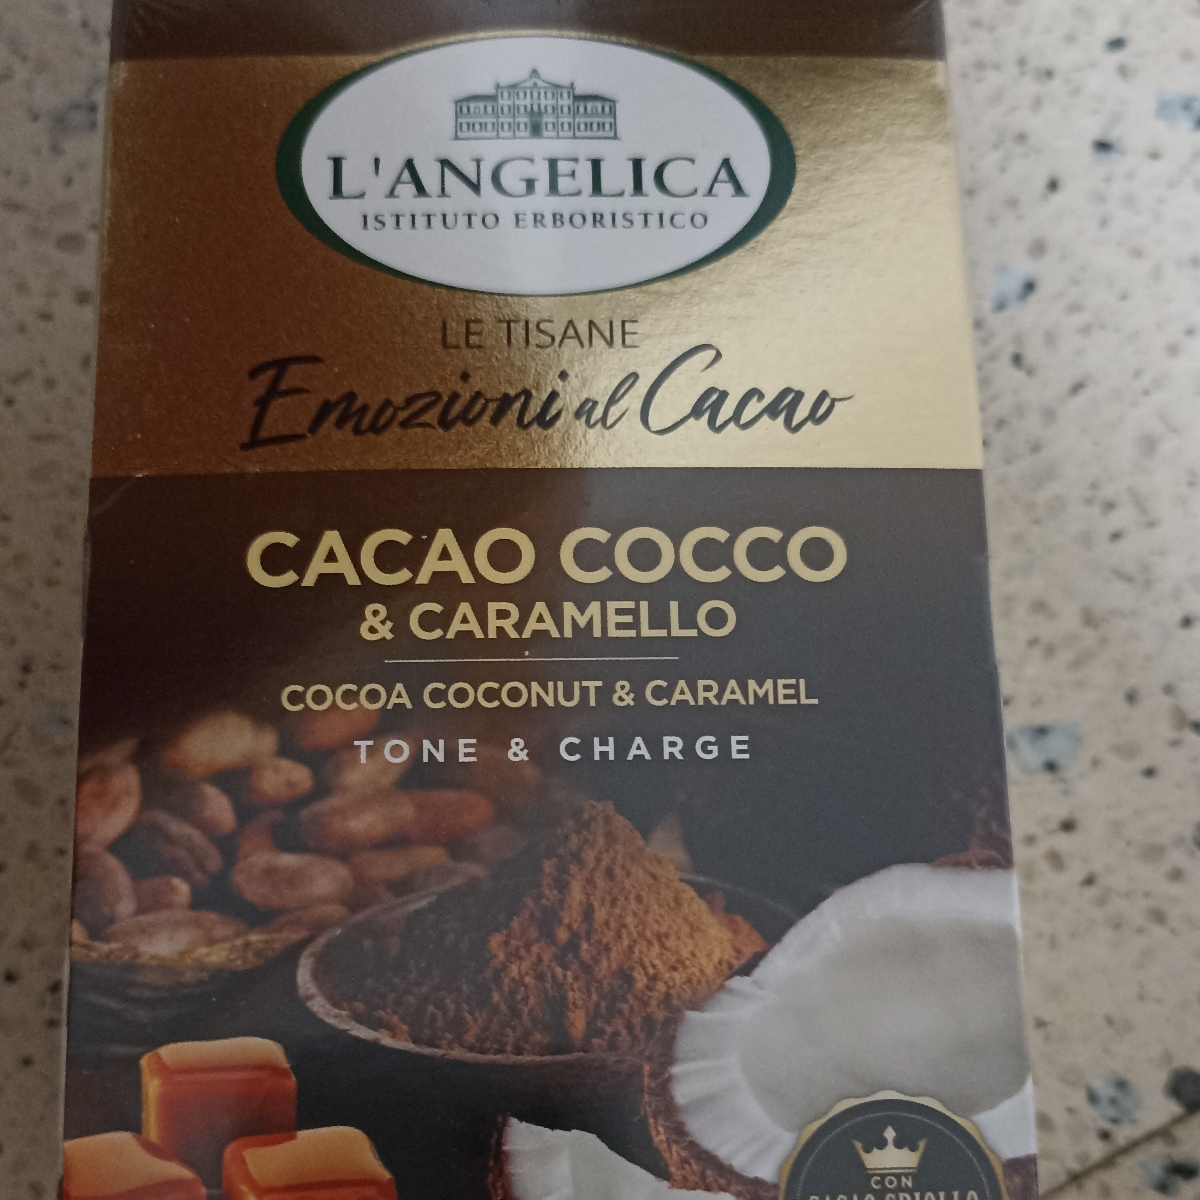 L'angelica Tisana cacao cocco e caramello Review